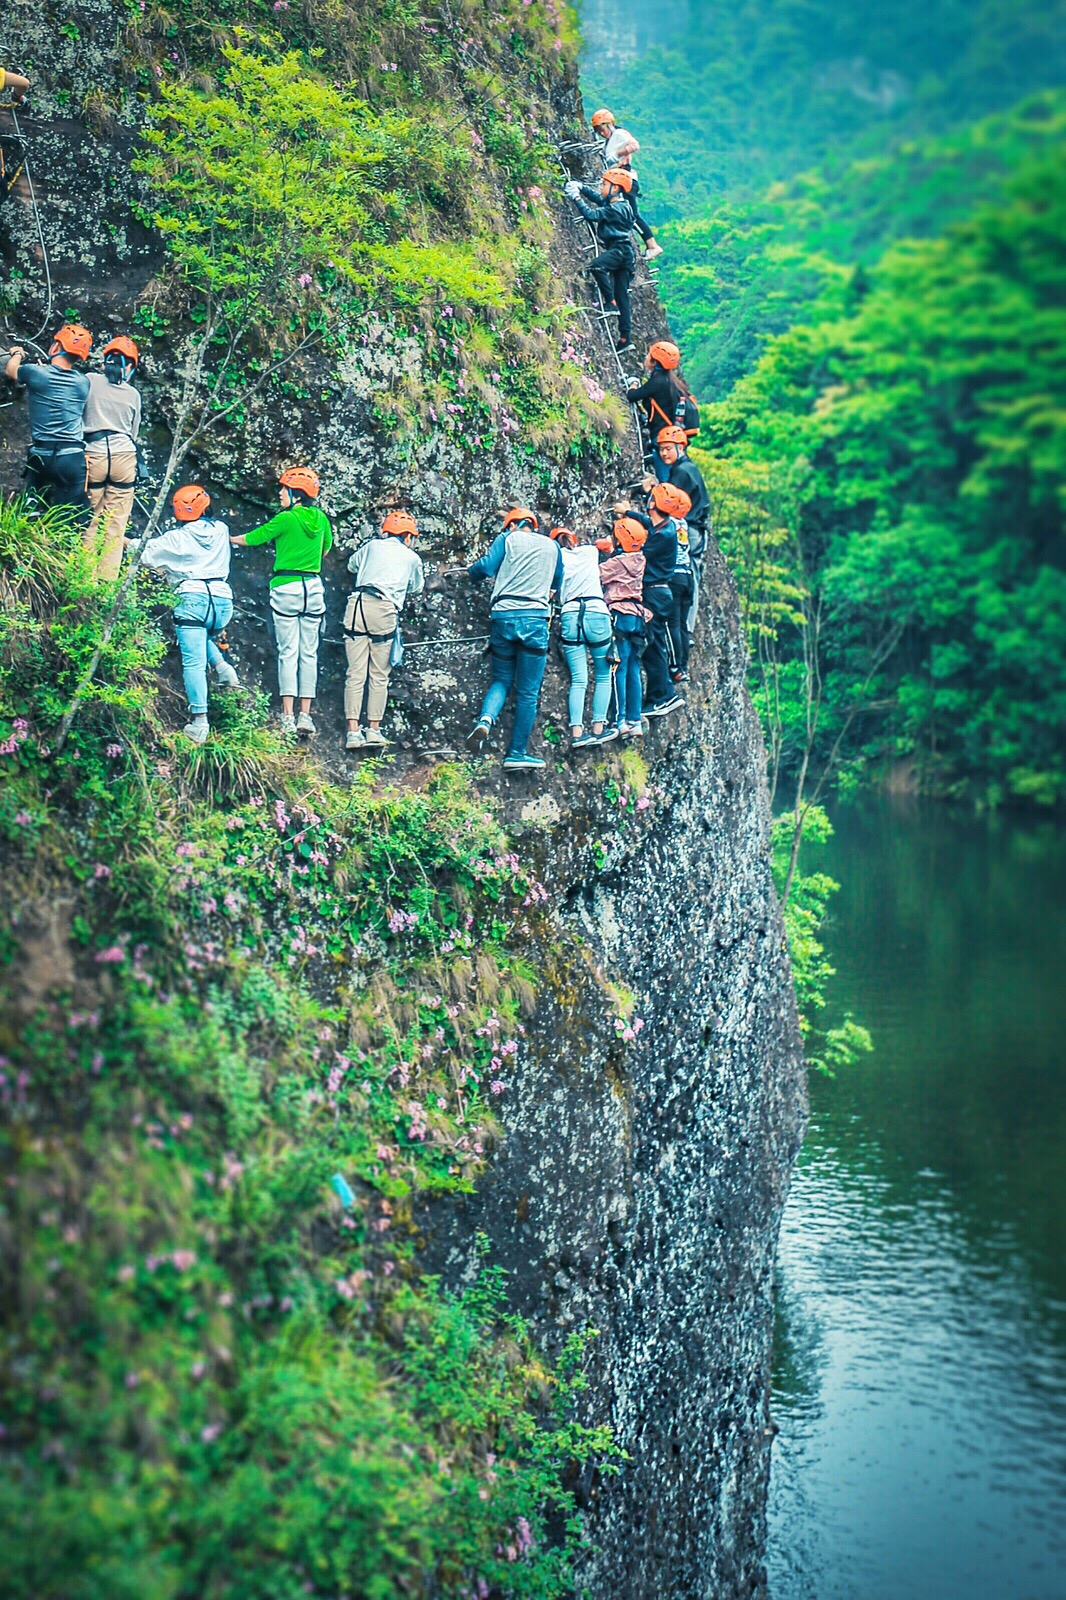 亚洲最长线飞拉达，原来在江西！ 飞拉达这种岩壁探险看起来惊险刺激，但实际上门槛非常低，只要身高、年龄